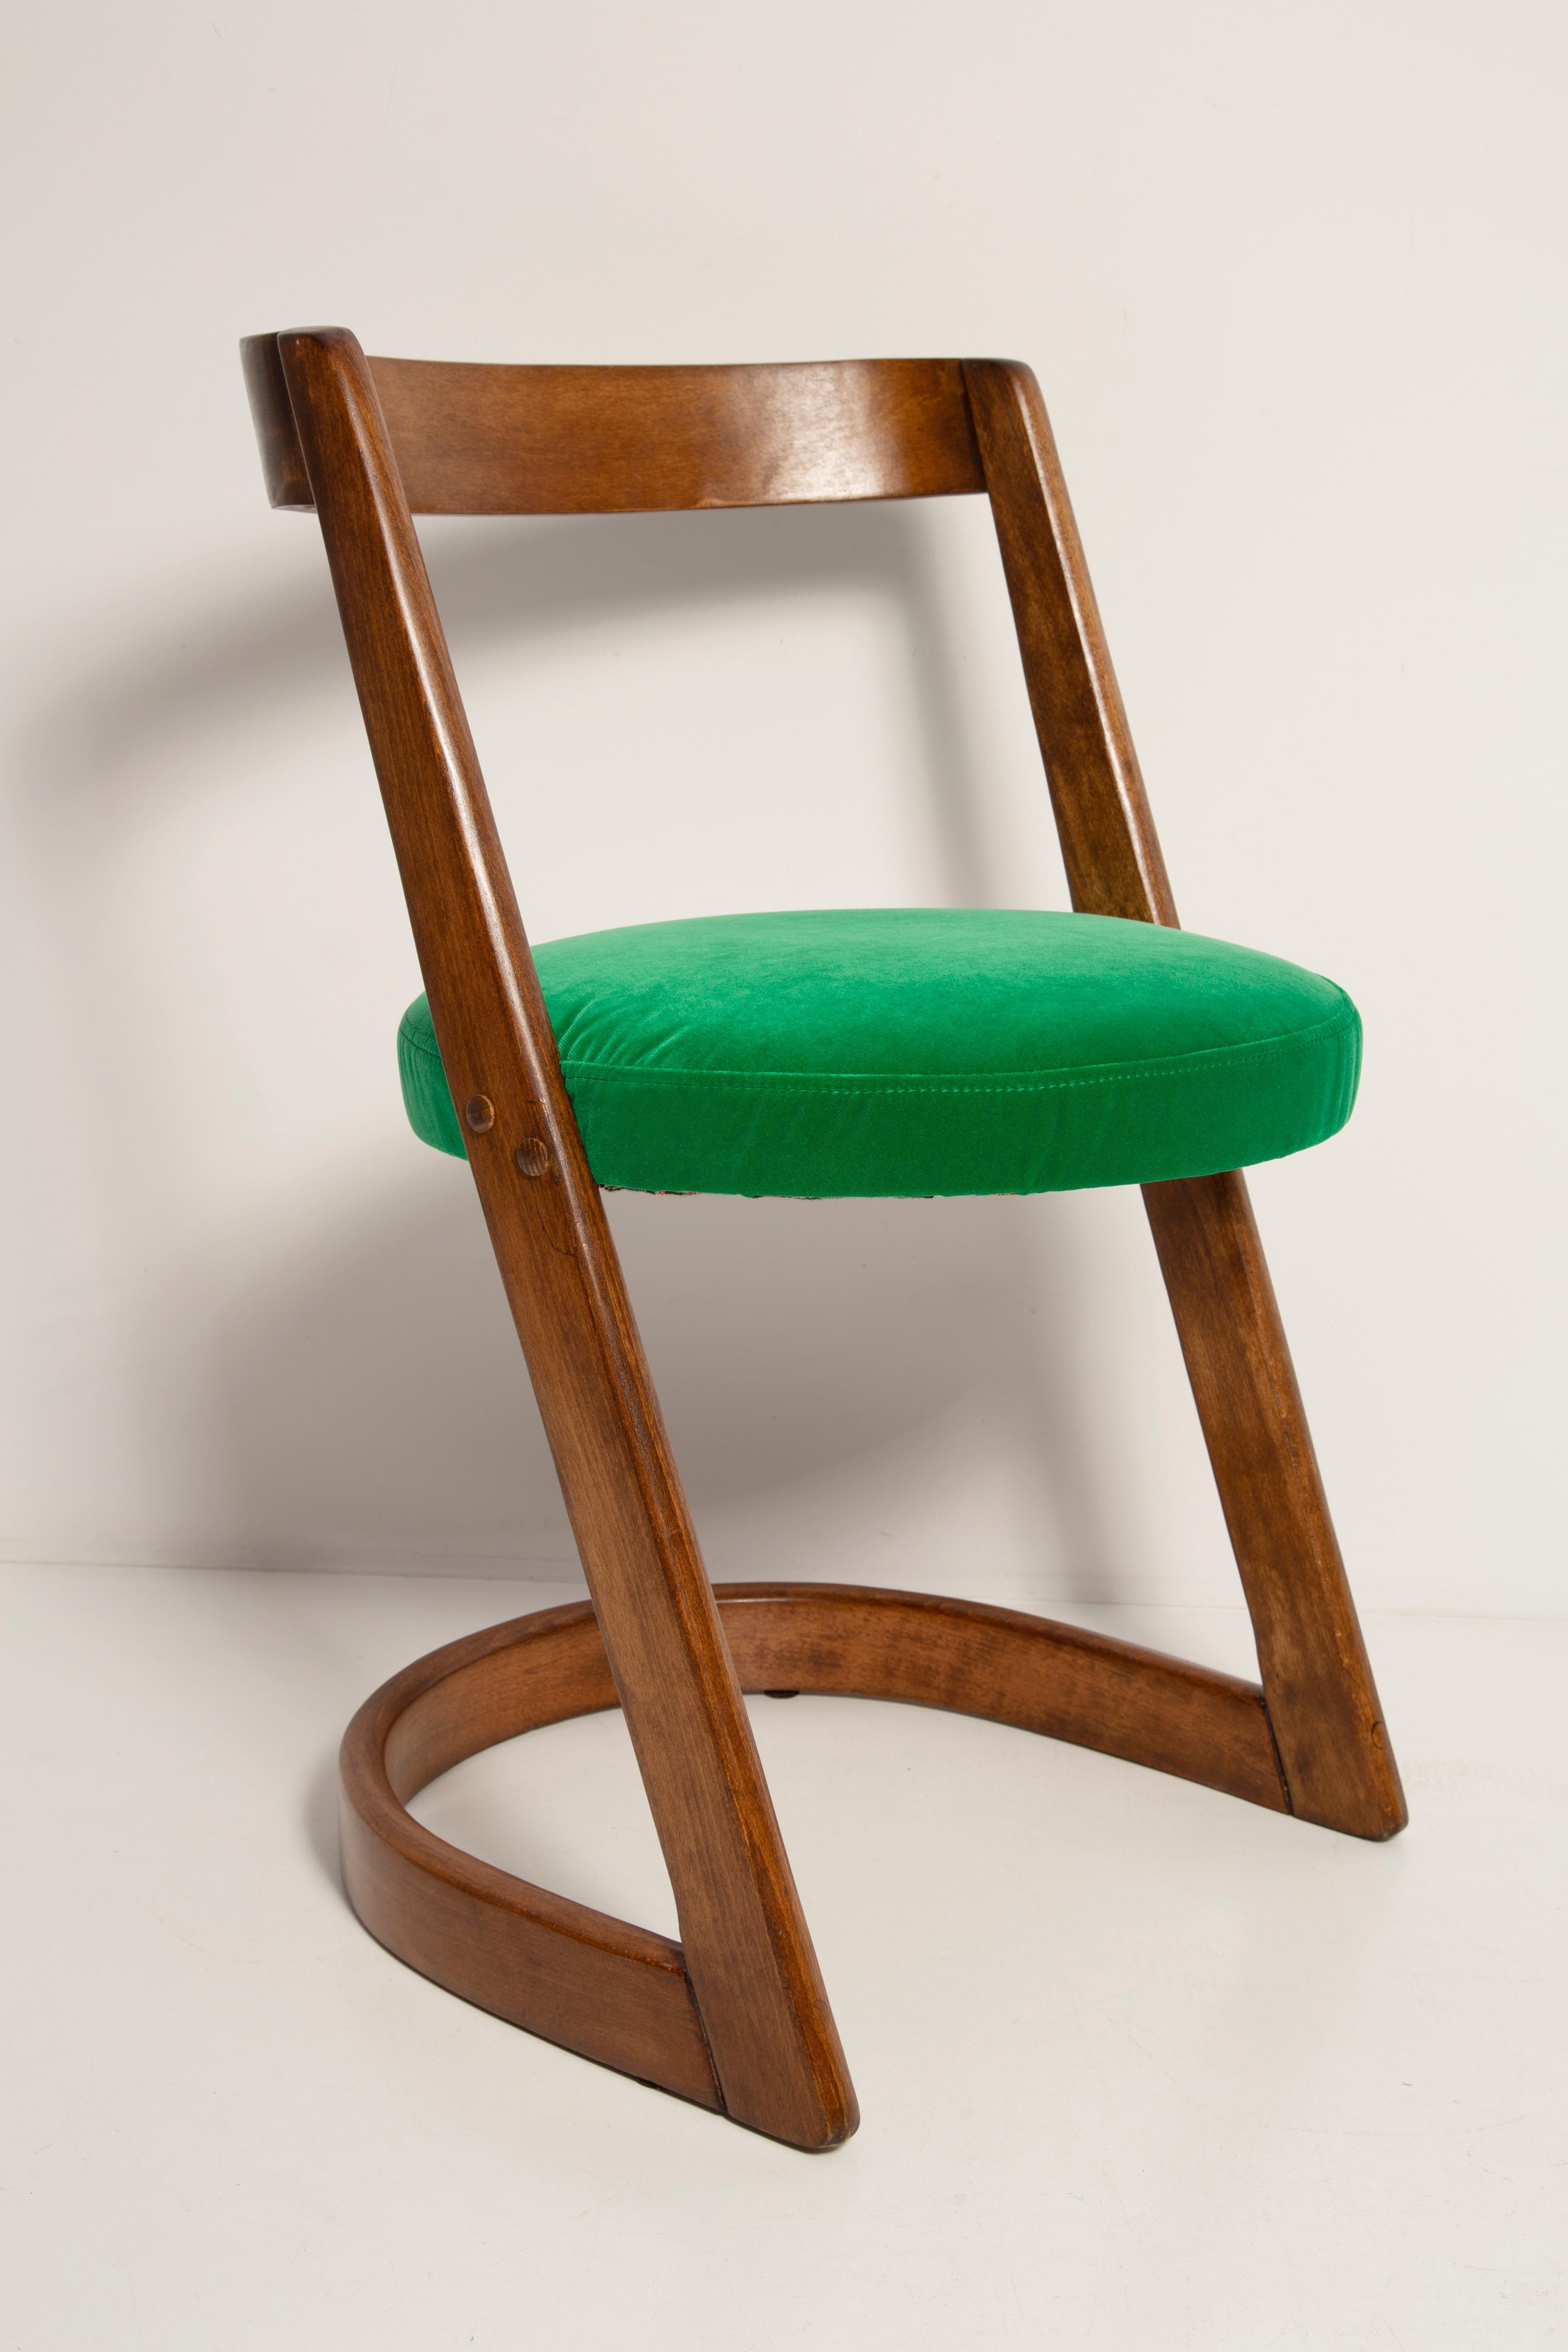 Halfa-Stuhl, entworfen von Baumann in den 1970er Jahren.
Im Katalog der Avantgarde-Sammlung.
Hergestellt aus 5 Stücken Doubs-Buche.

Hergestellt aus Buchenholz. Der Stuhl wurde komplett neu gepolstert, die Holzarbeiten wurden aufgefrischt. Der Sitz